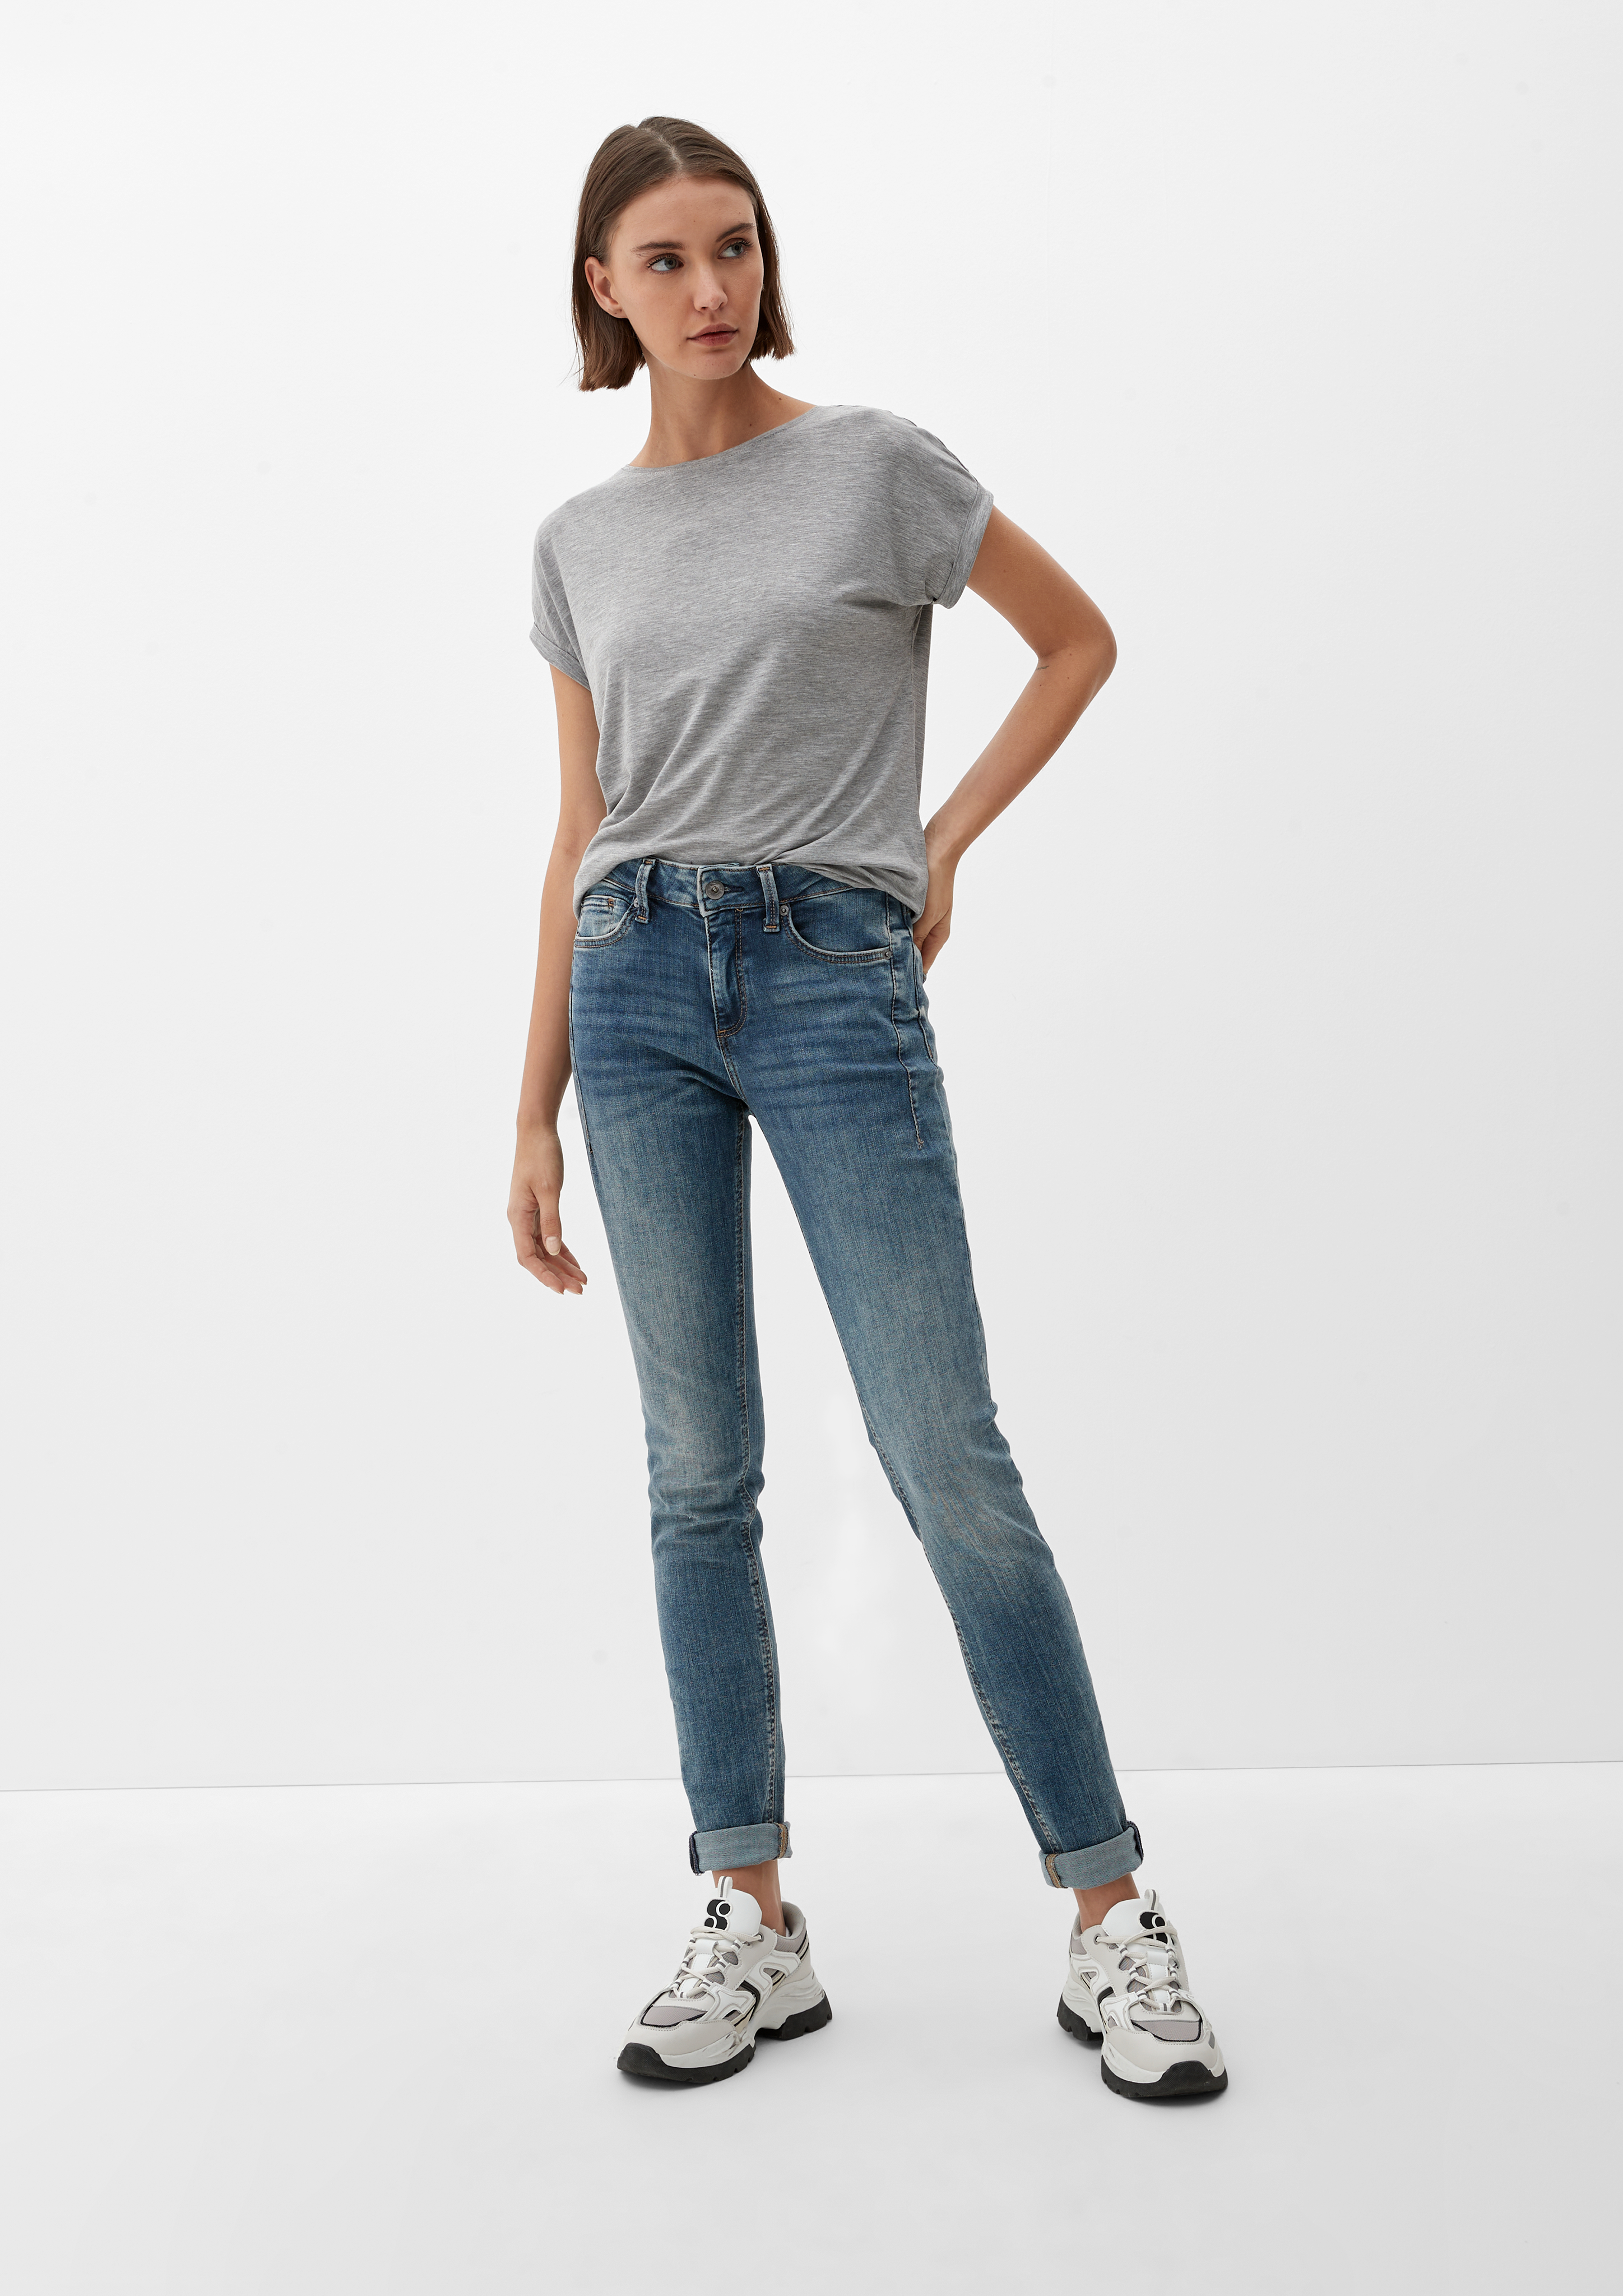 Jeans Sadie / ozeanblau Leg / Fit / Mid Skinny - Skinny Rise